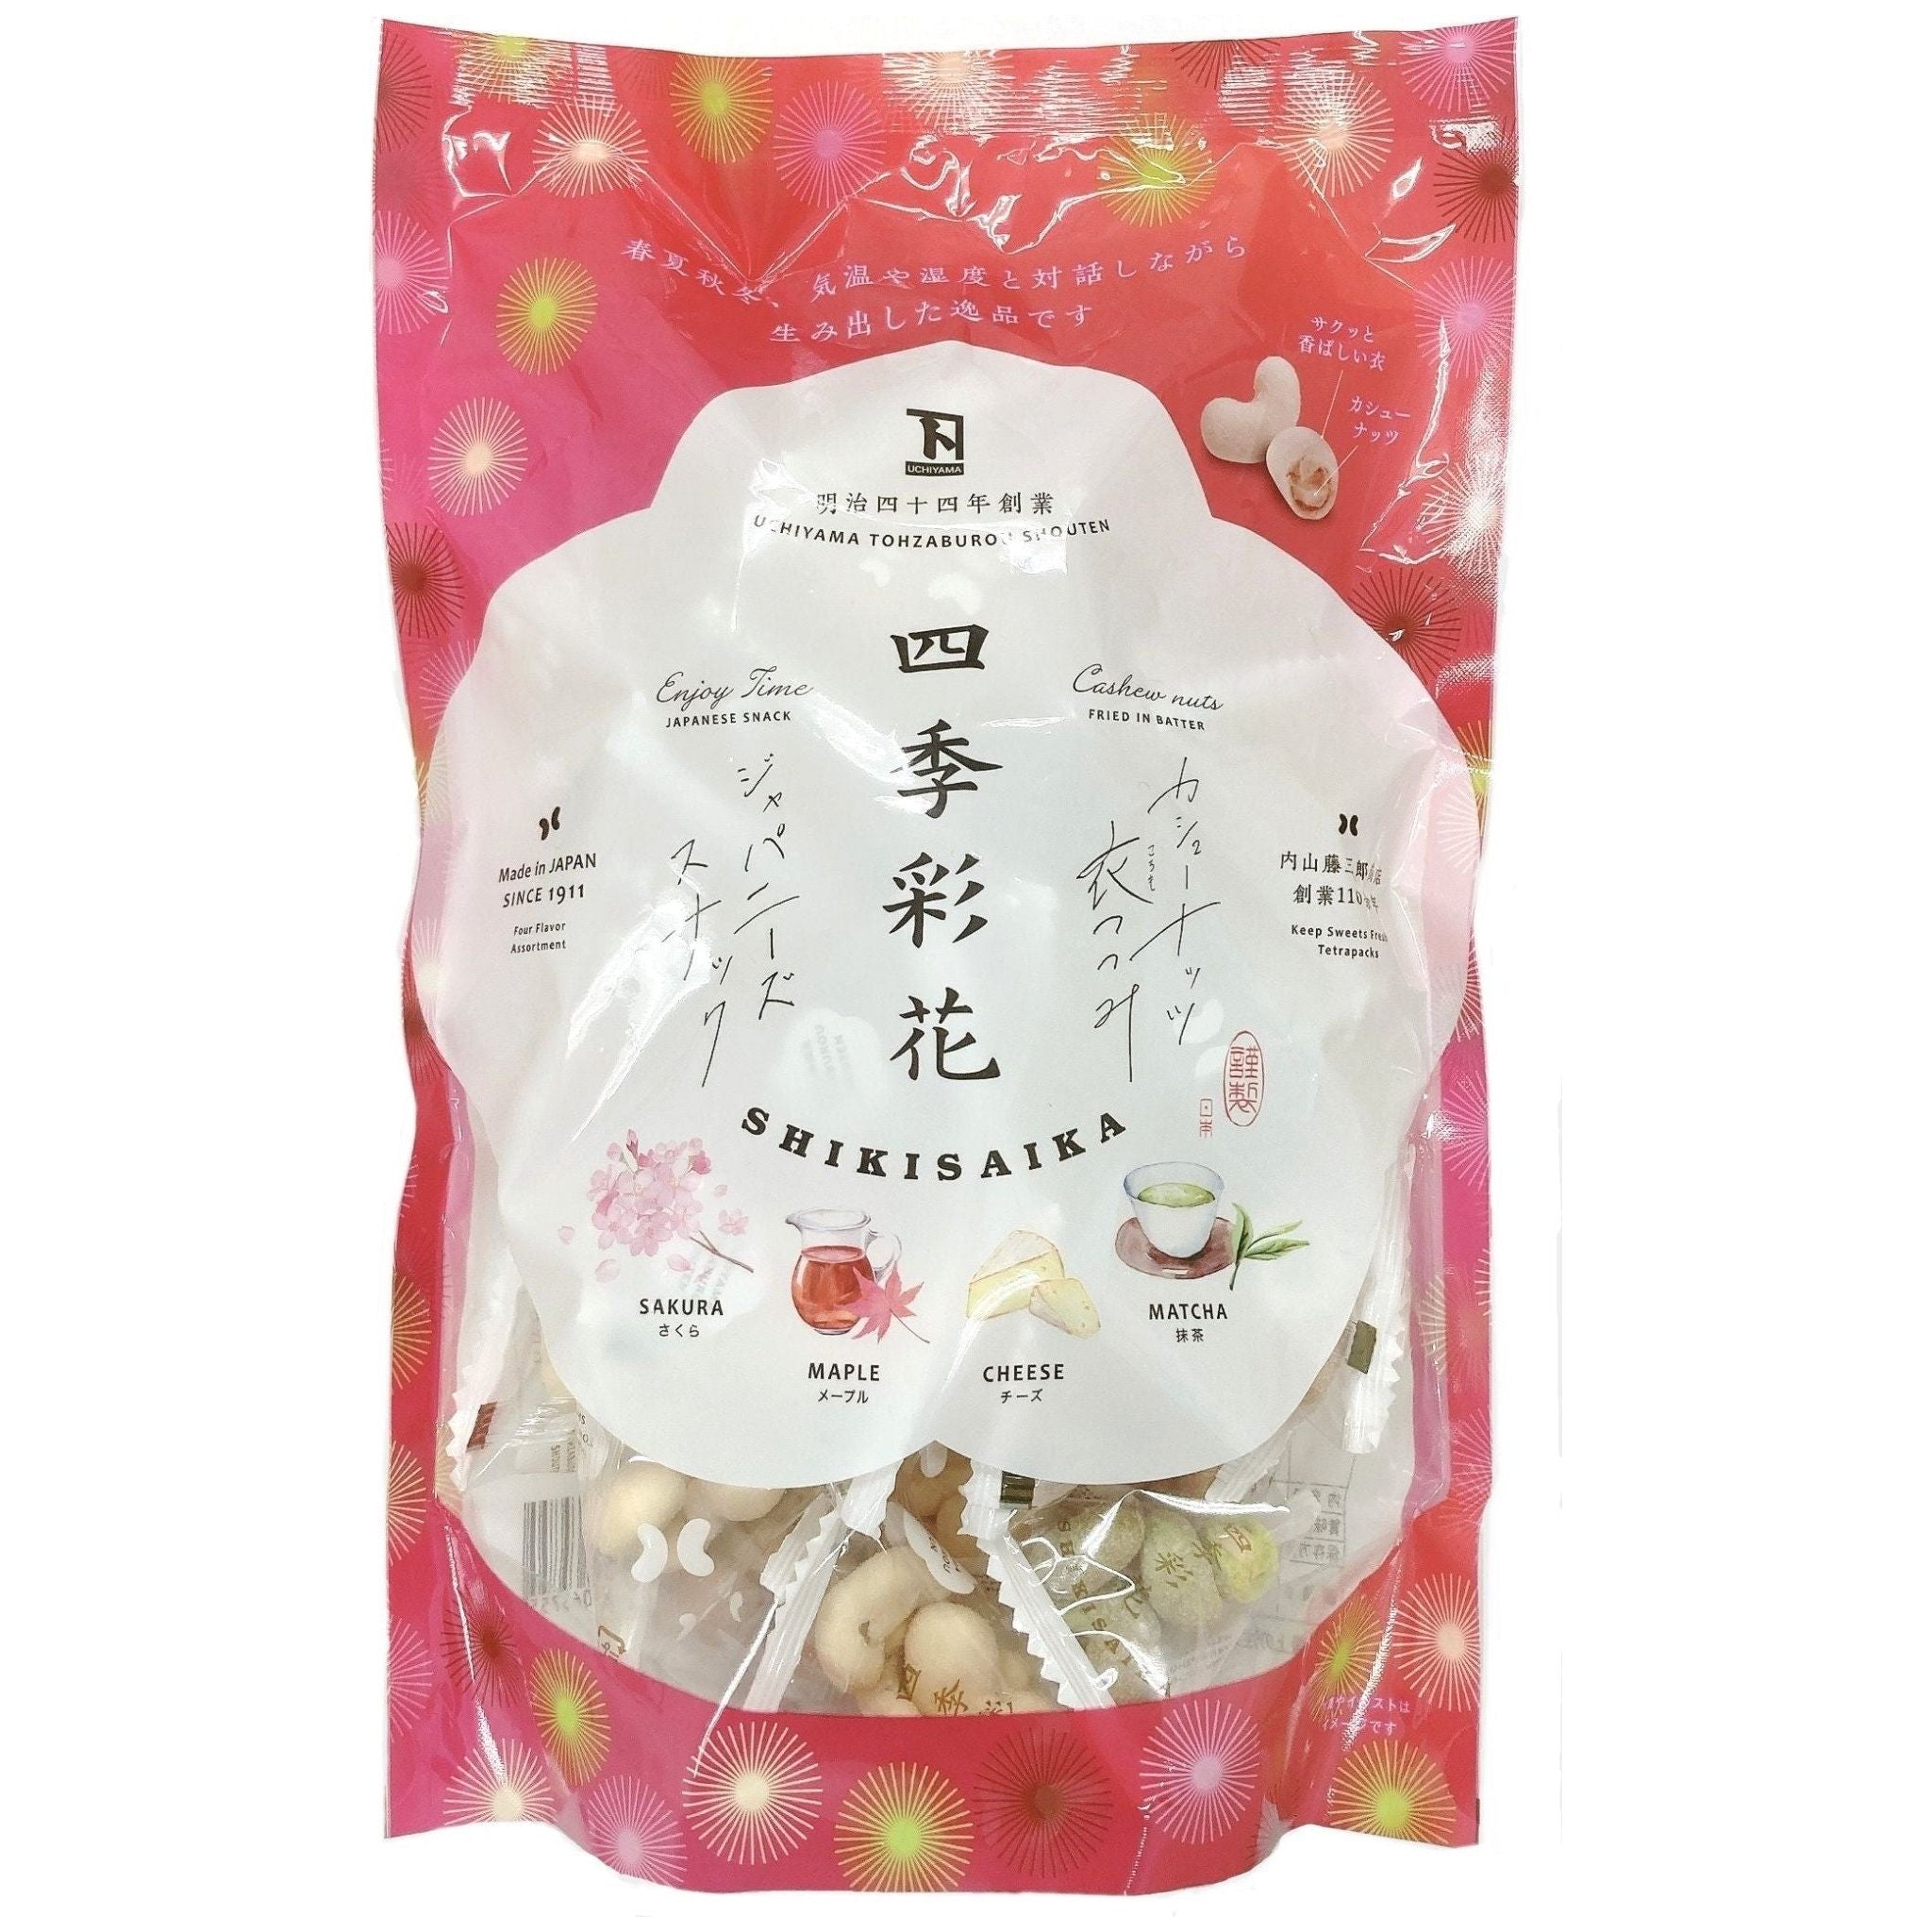 Touzaburou SHIKISAIKA assorted Cashew nuts - Tokyo Fresh Direct